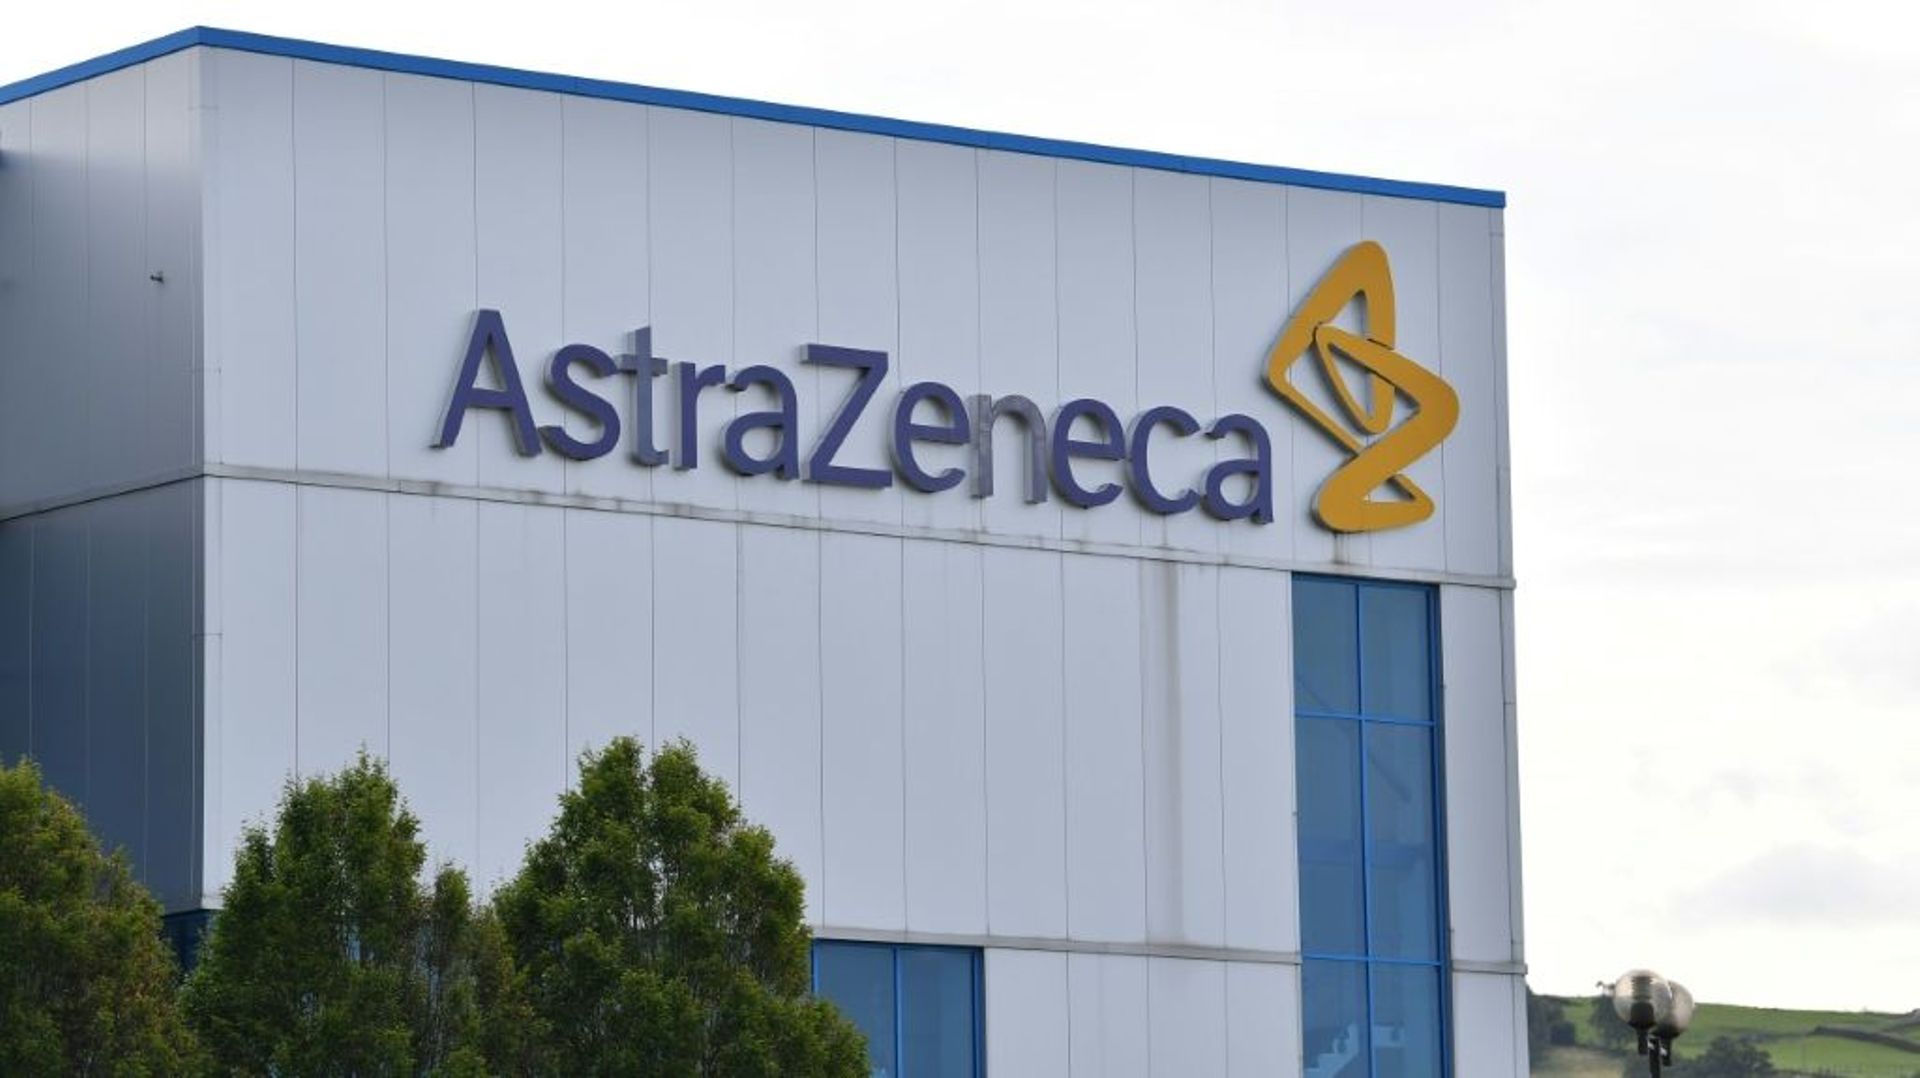 Le site du laboratoire AstraZeneca de Macclesfield, dans le centre de l'Angleterre, le 21 juillet 2020